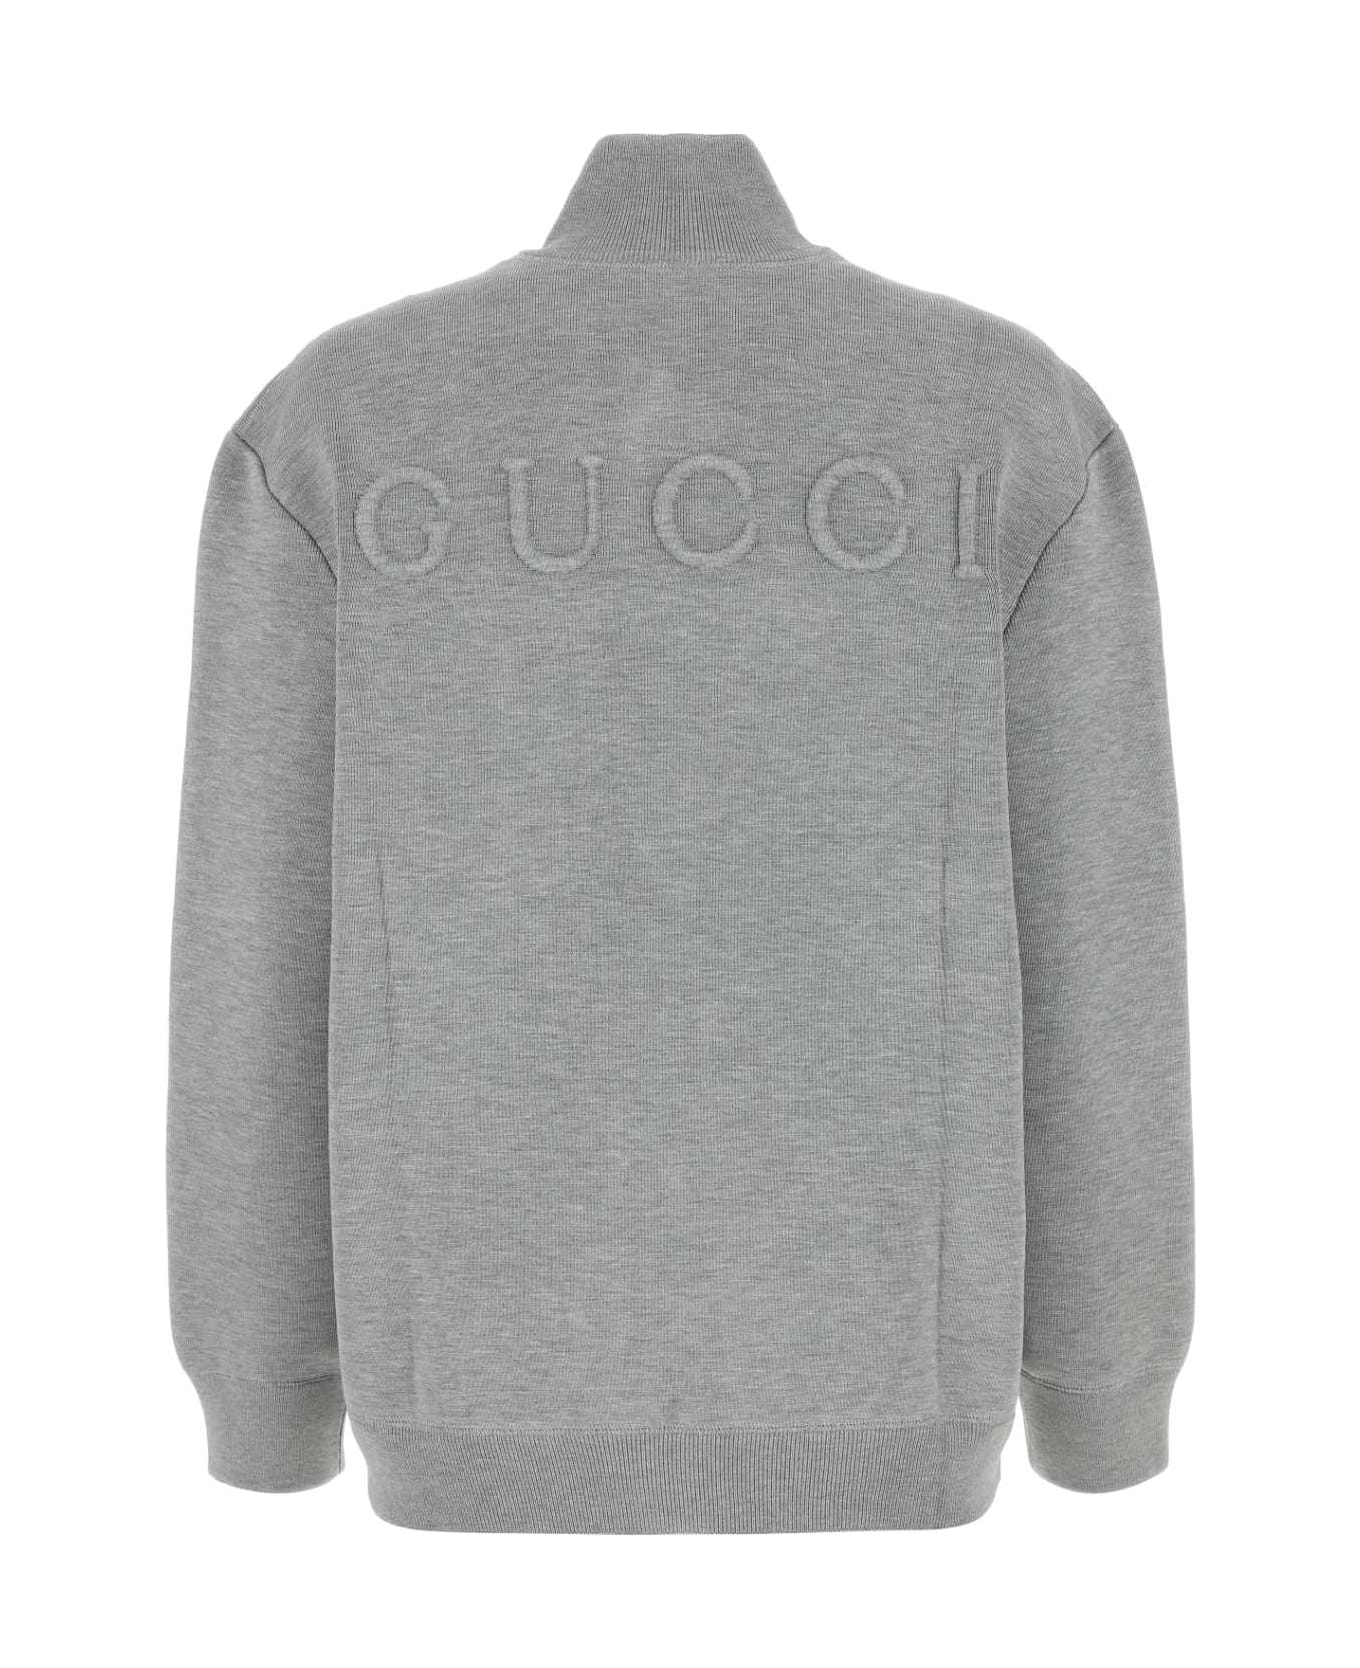 Gucci Grey Stretch Wool Blend Cardigan - LIGHTGREYMELANGE ジャケット